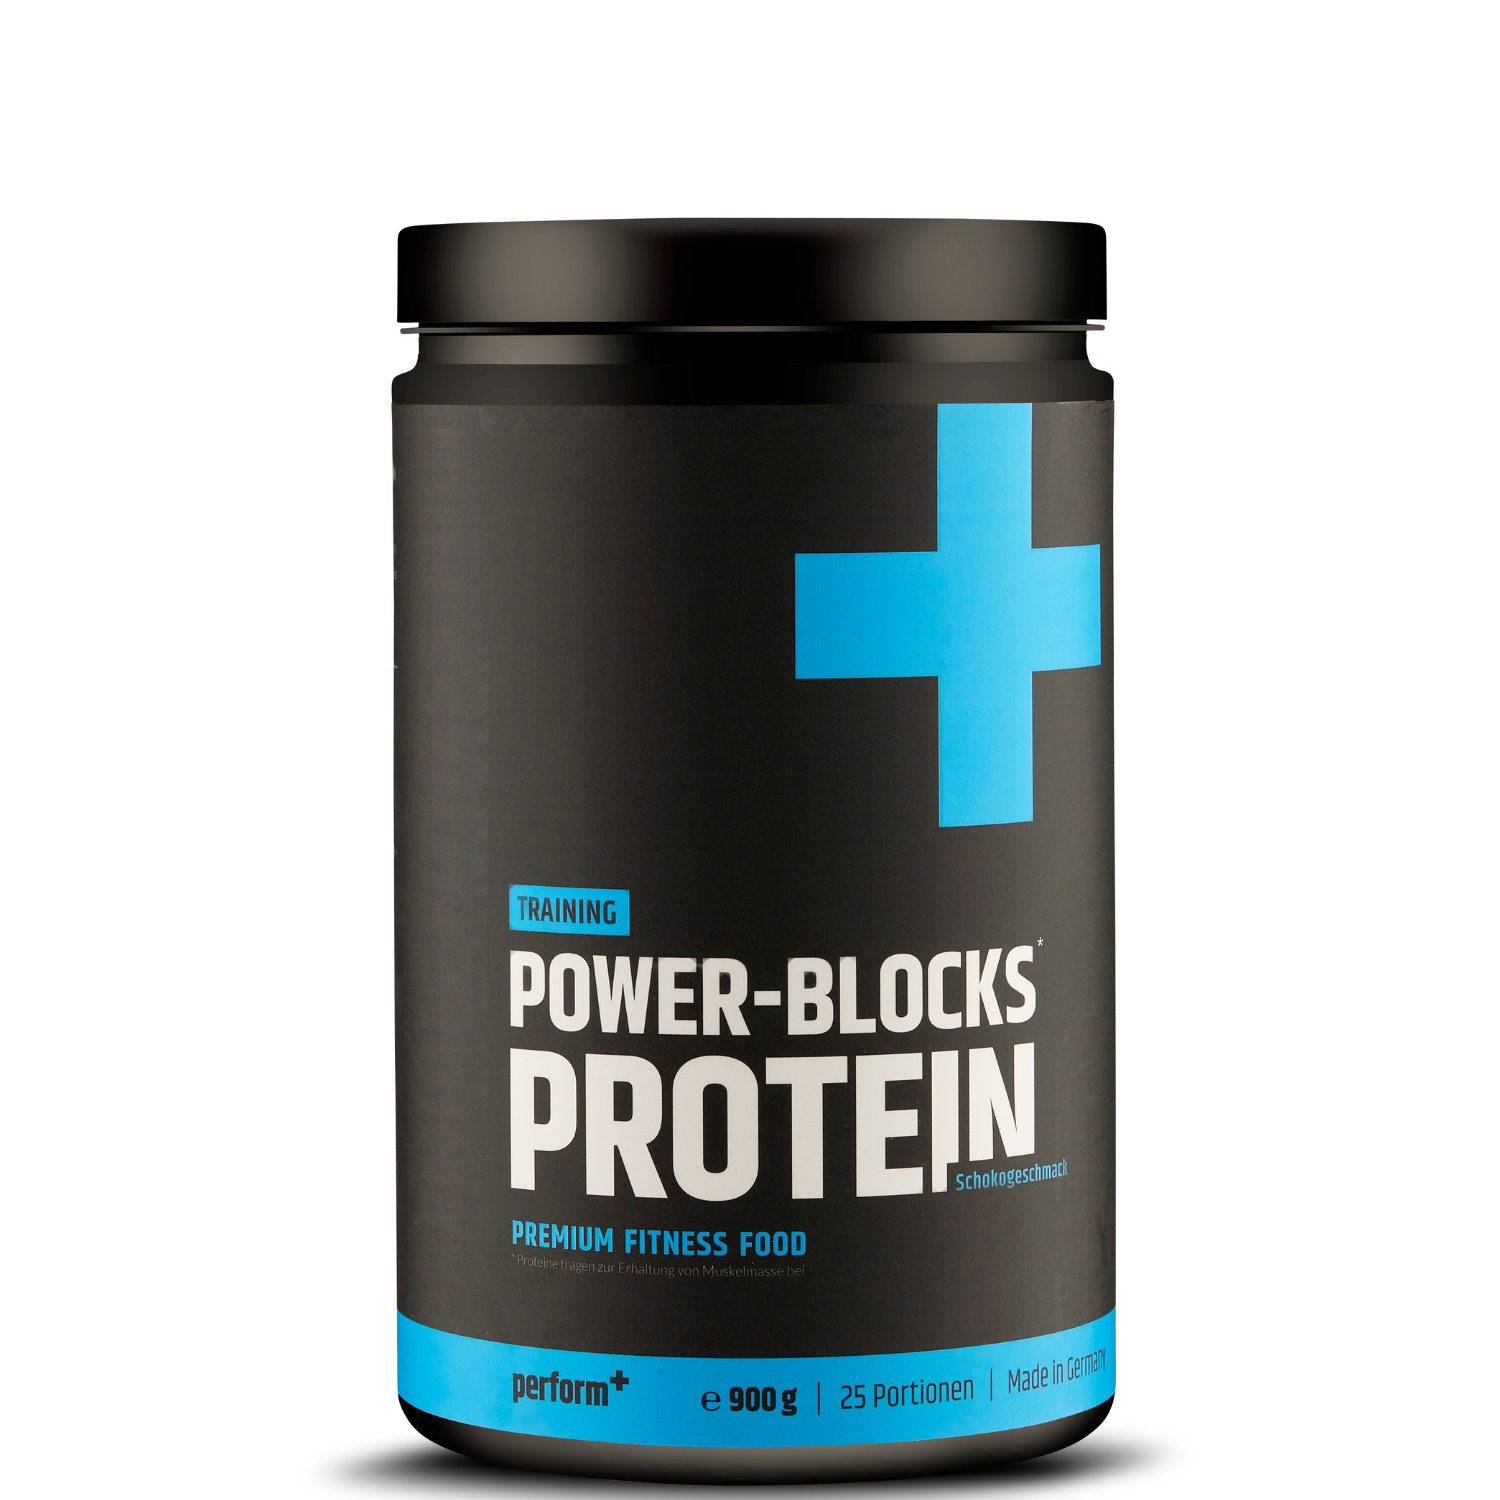 Power-Blocks Protein